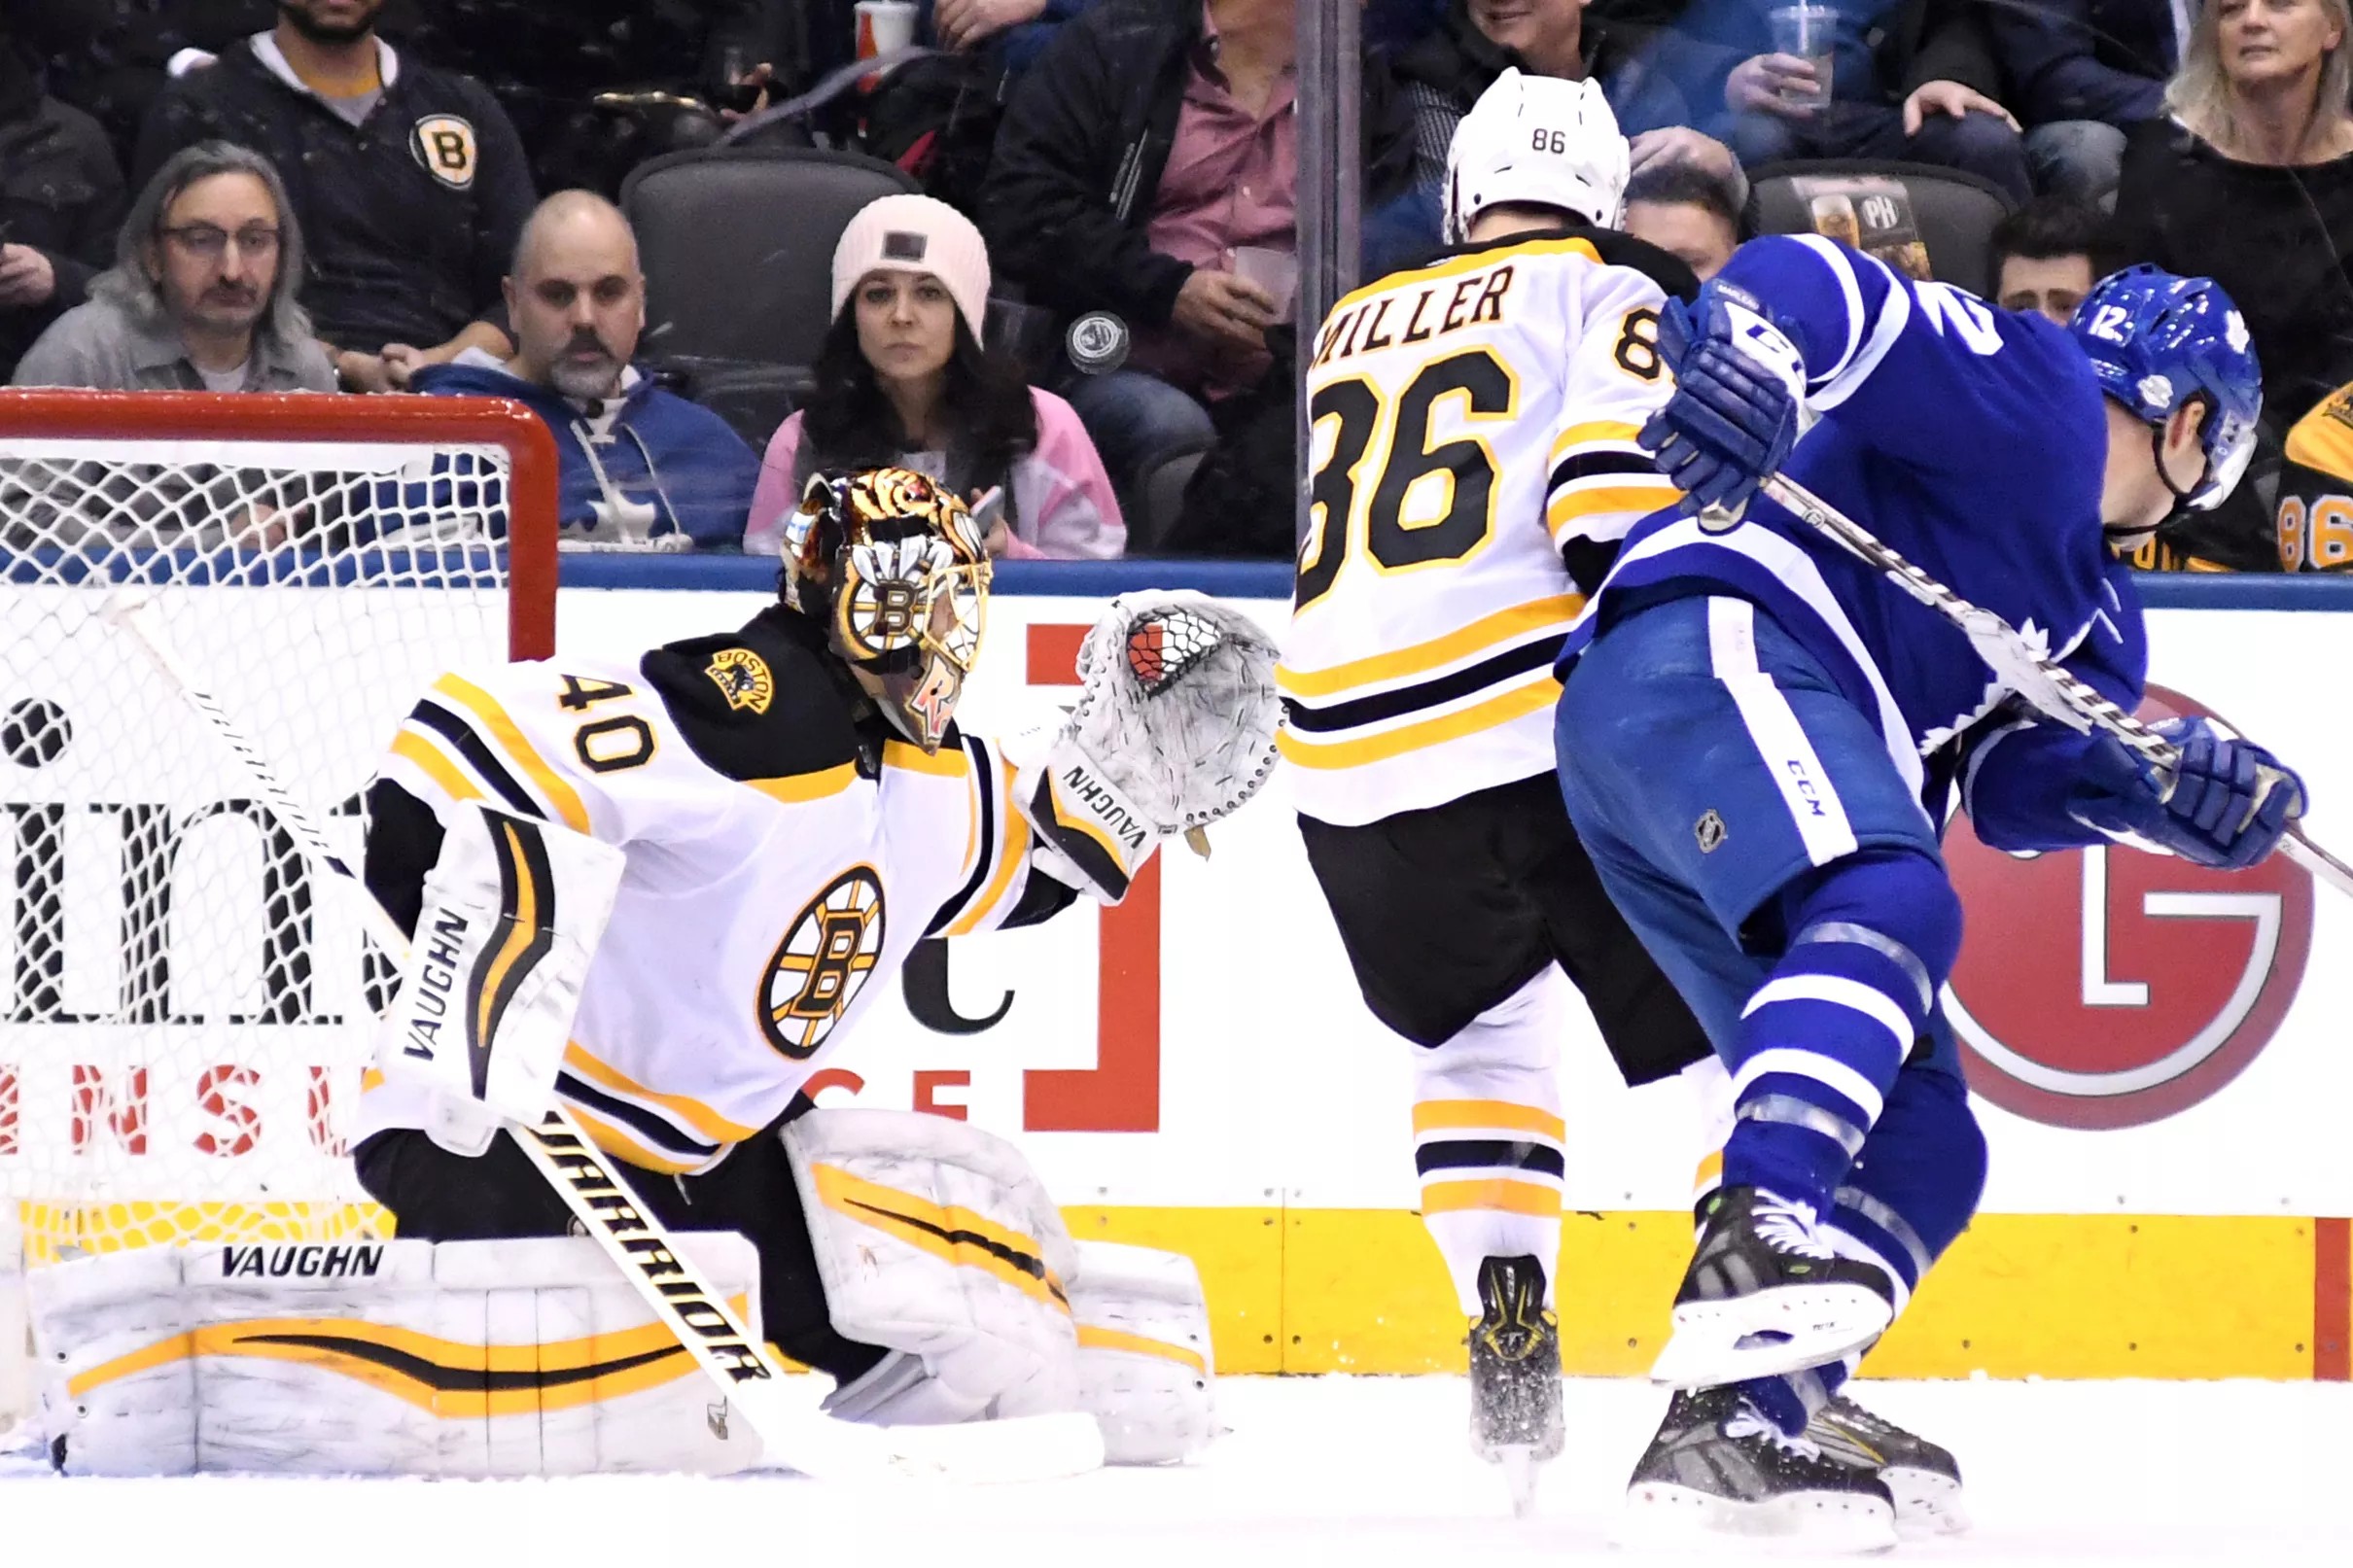 Bruins playoff scenarios Without Carolina help, it’s Toronto